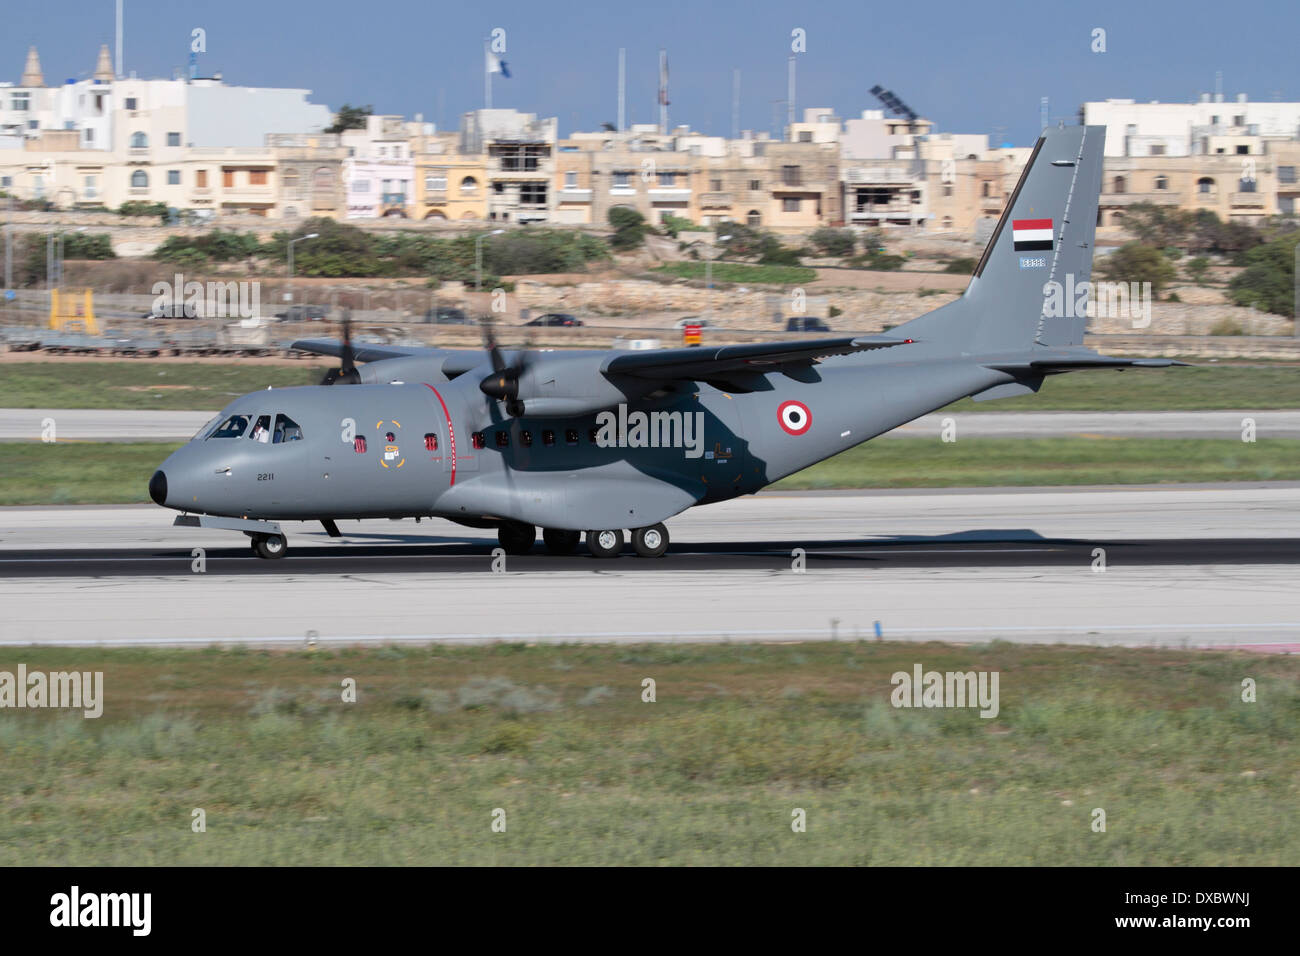 Airbus Military CN235 Licht Verkehrsmittel Flugzeug bei der Ankunft in Malta während seiner Lieferung Flug in die jemenitische Luftwaffe Stockfoto